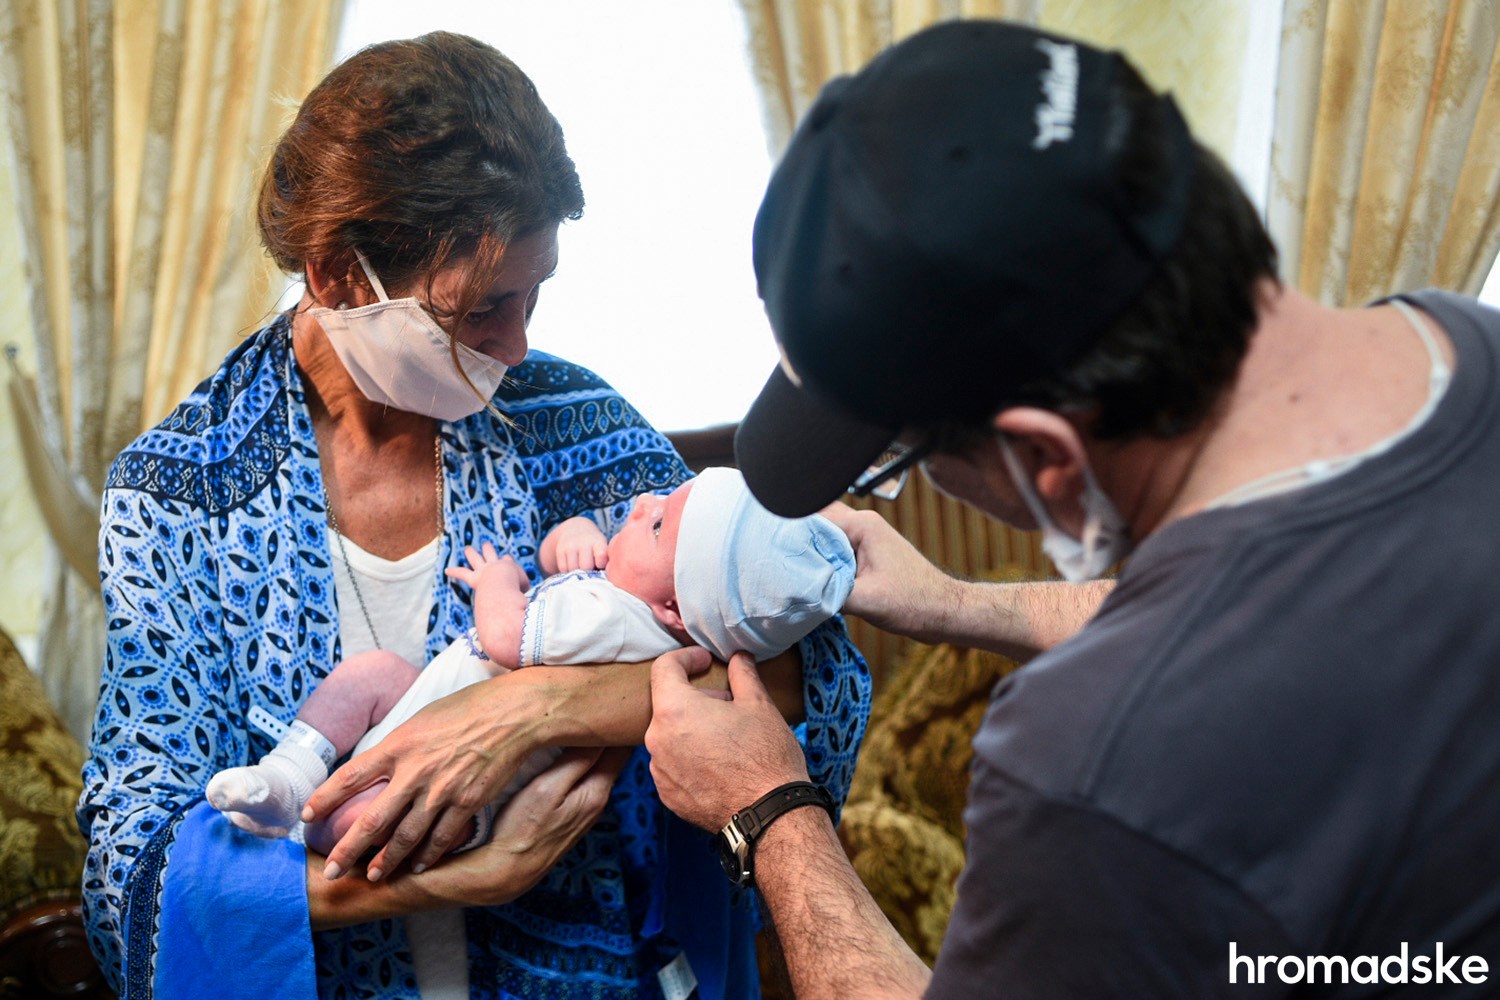 Семейные пары из Испании и Аргентины прилетели в Украину за детьми, рожденными суррогатными матерями. Фото: Макс Левин для hromdaske